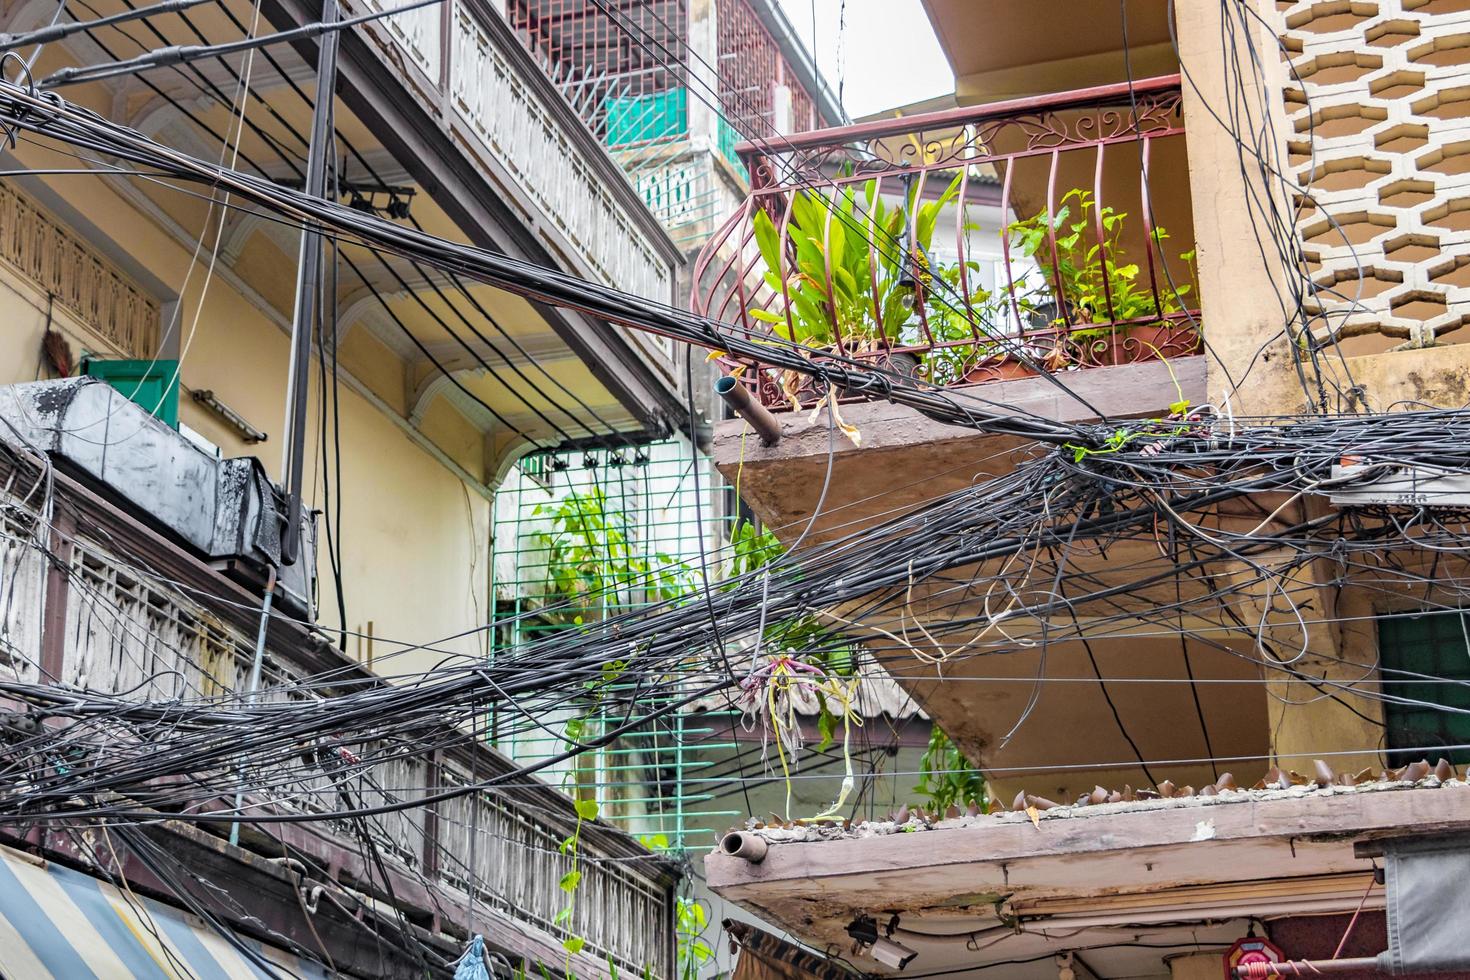 absolut kabelkaos på thailändsk elstolpe i bangkok thailand. foto